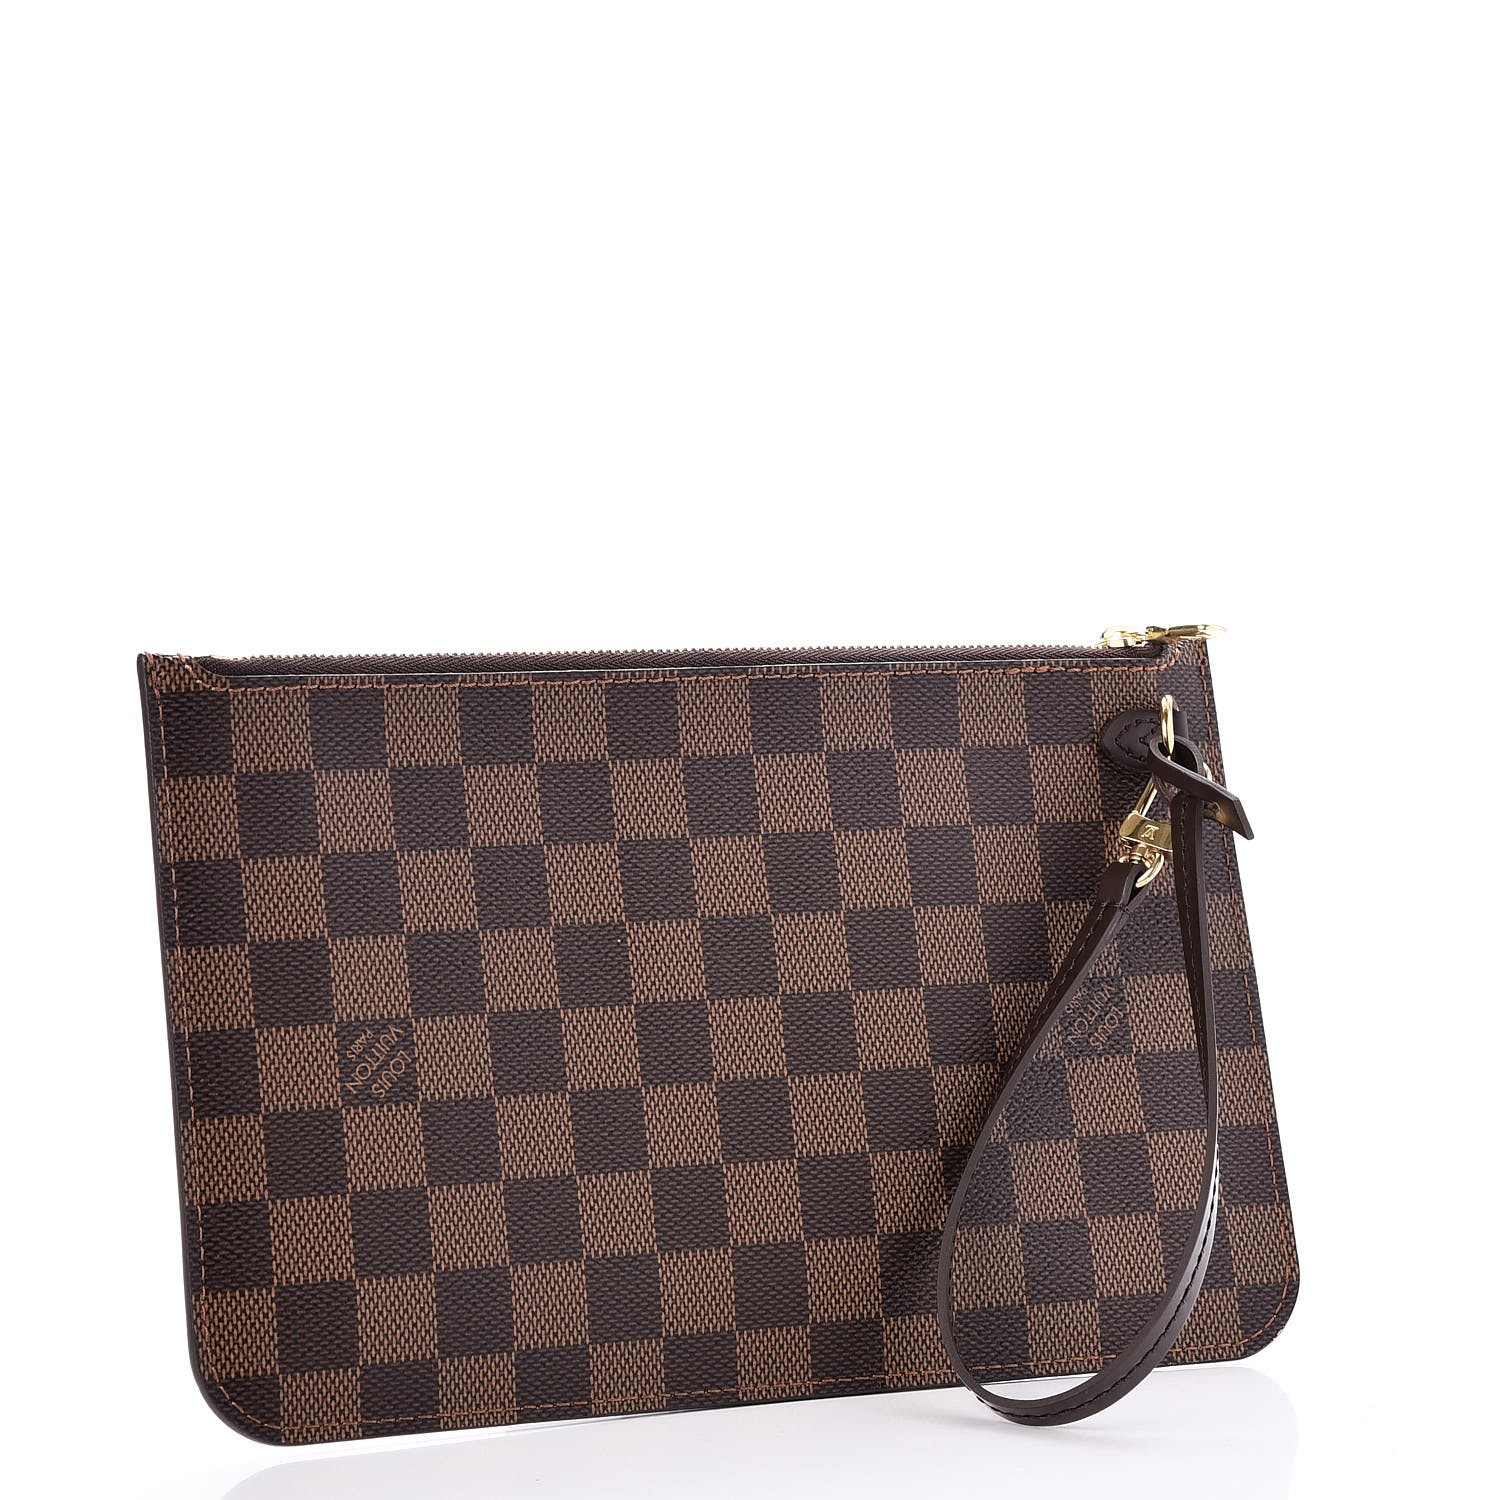 Louis Vuitton - Authenticated Bellevue Handbag - Cloth Multicolour for Women, Never Worn